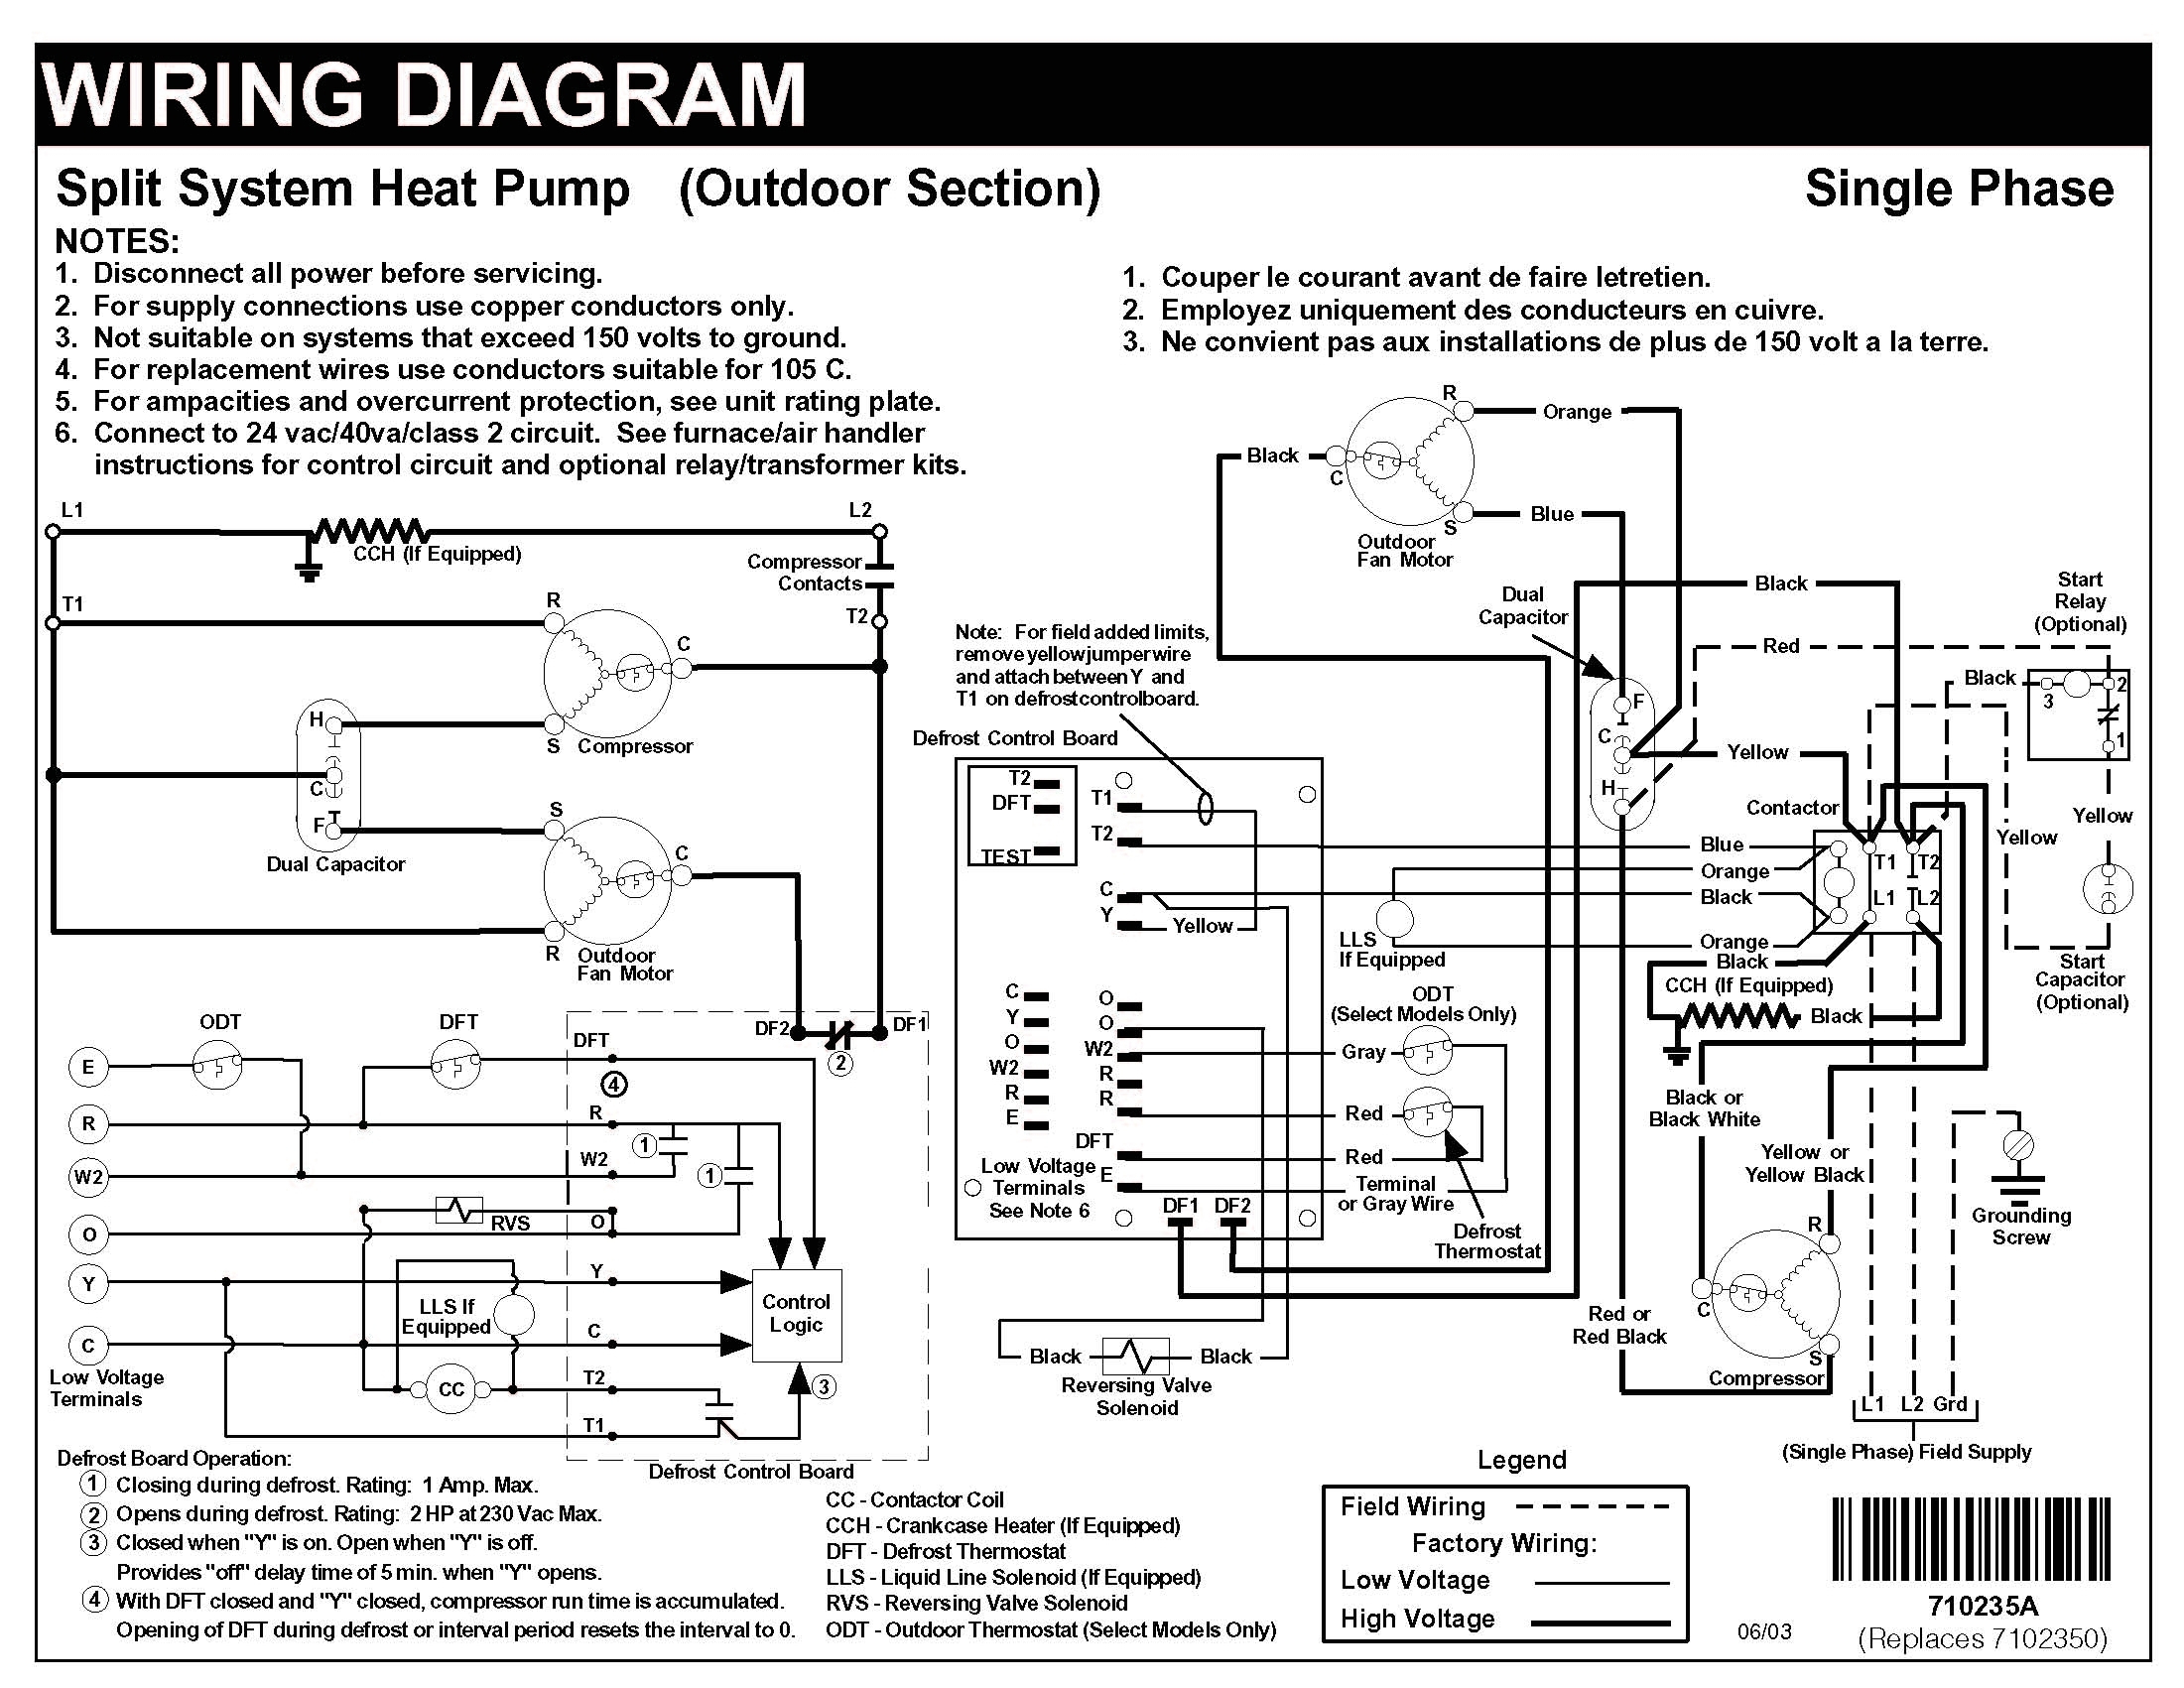 Heat Pump Wiring Schematic - Data Wiring Diagram Today - Heat Pump Wiring Diagram